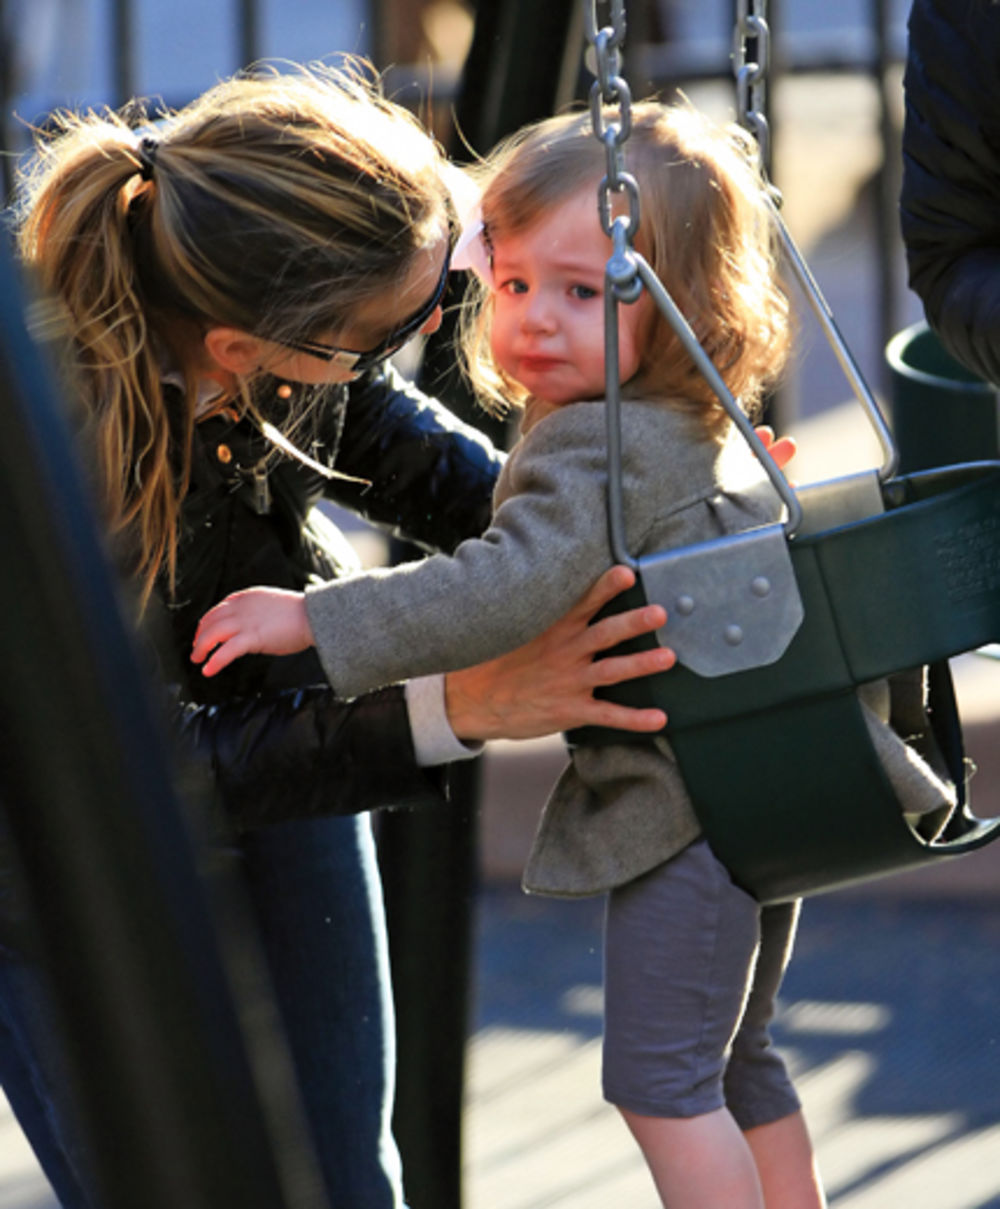 Budući da joj je moda jedna od najvećih strasti, glumica Sara Džesika Parker (46) jedva je dočekala da njene dvogodišnje bliznakinje Marion i Tabit dovoljno porastu kako bi mogla da im obuče atraktivne dečije stvari